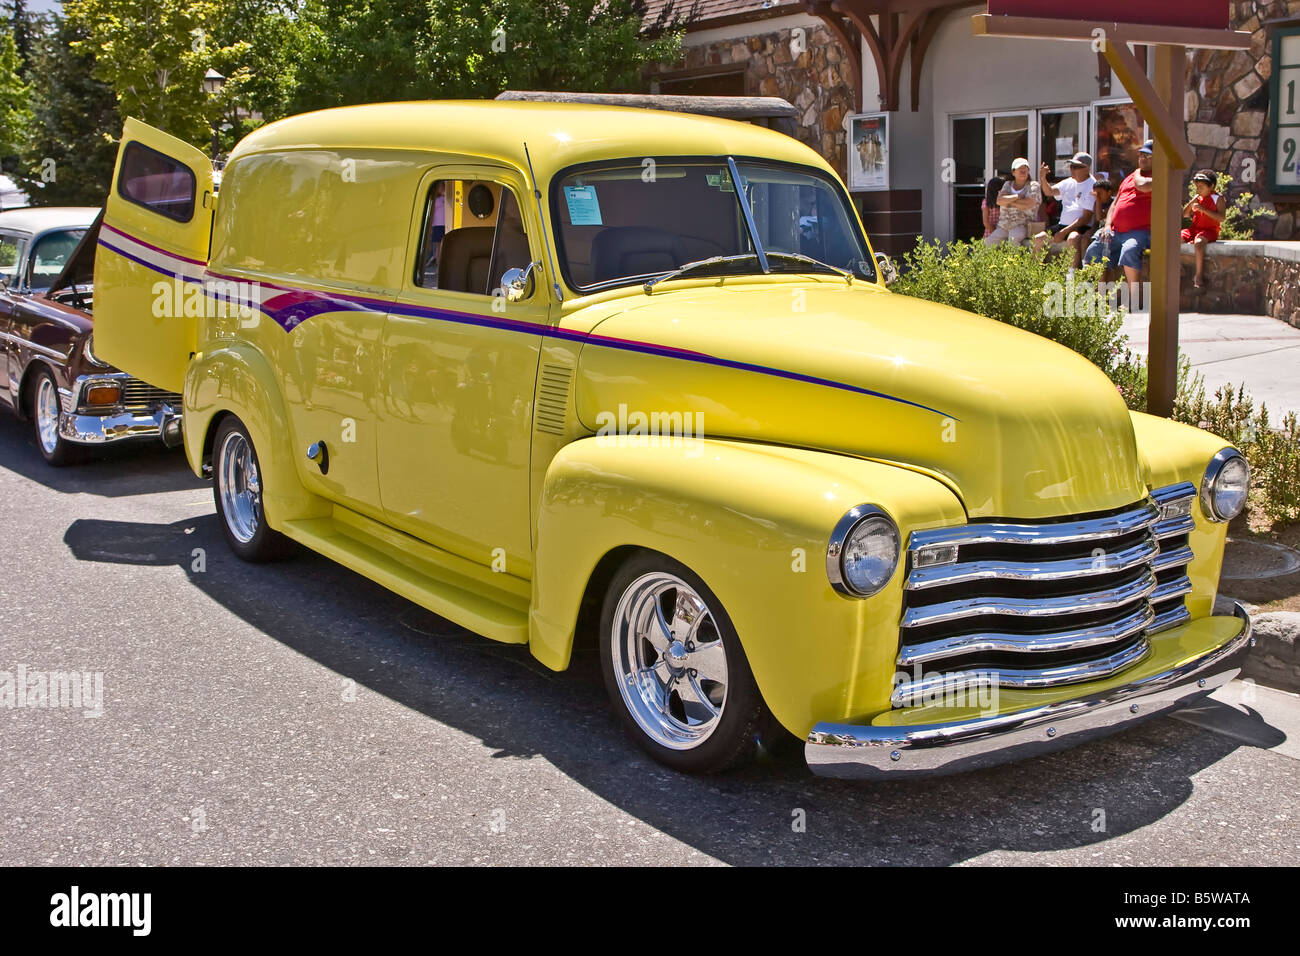 Yellow 1951 Chevrolet panel van Stock Photo - Alamy